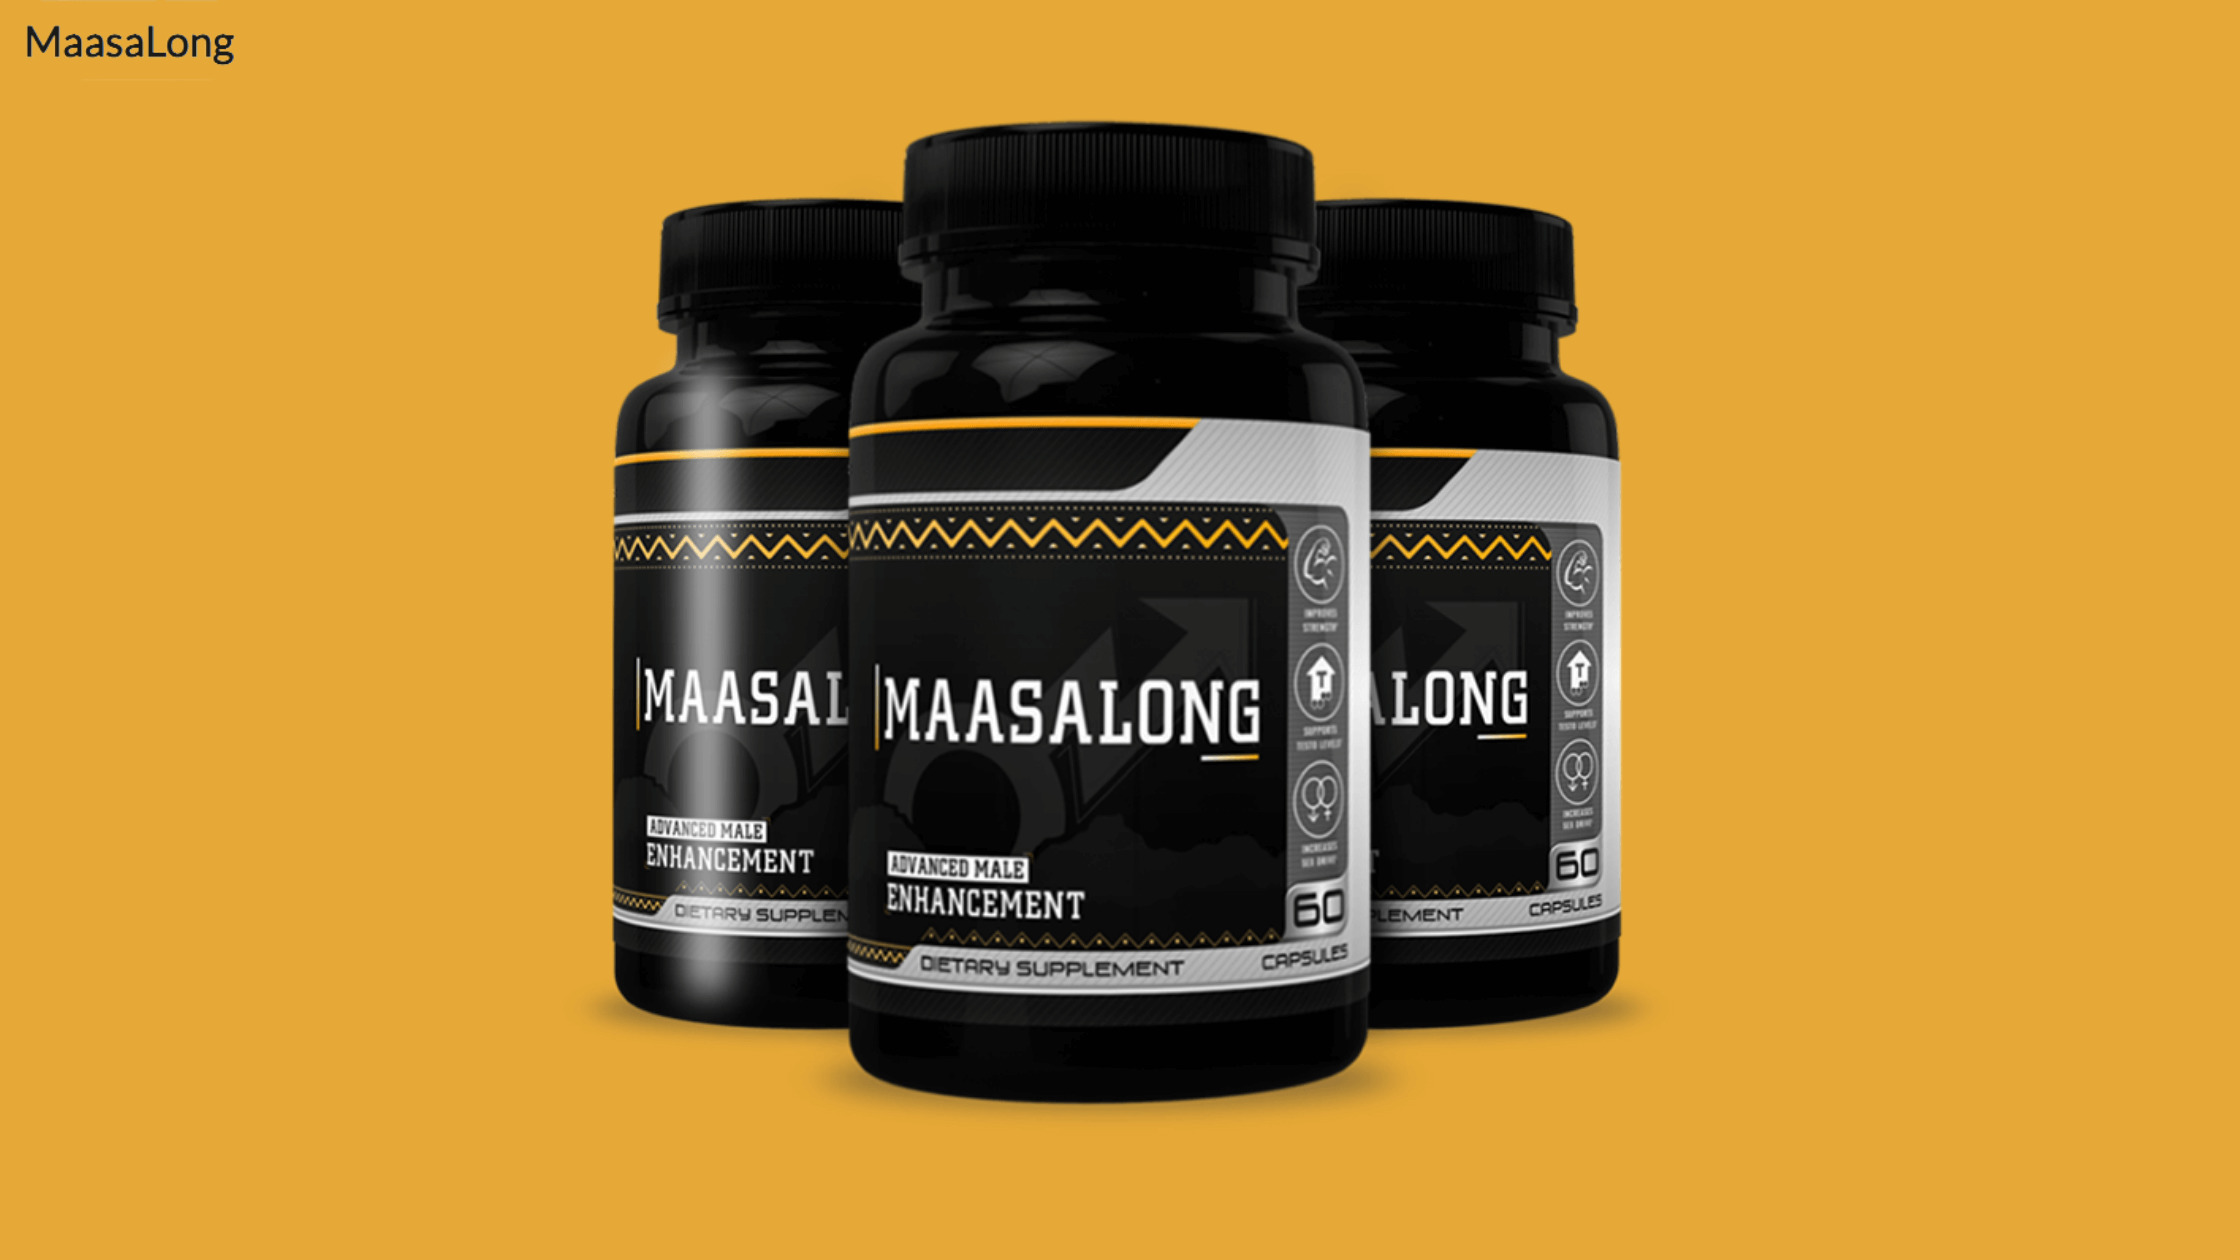 MaasaLong male enhancement pill